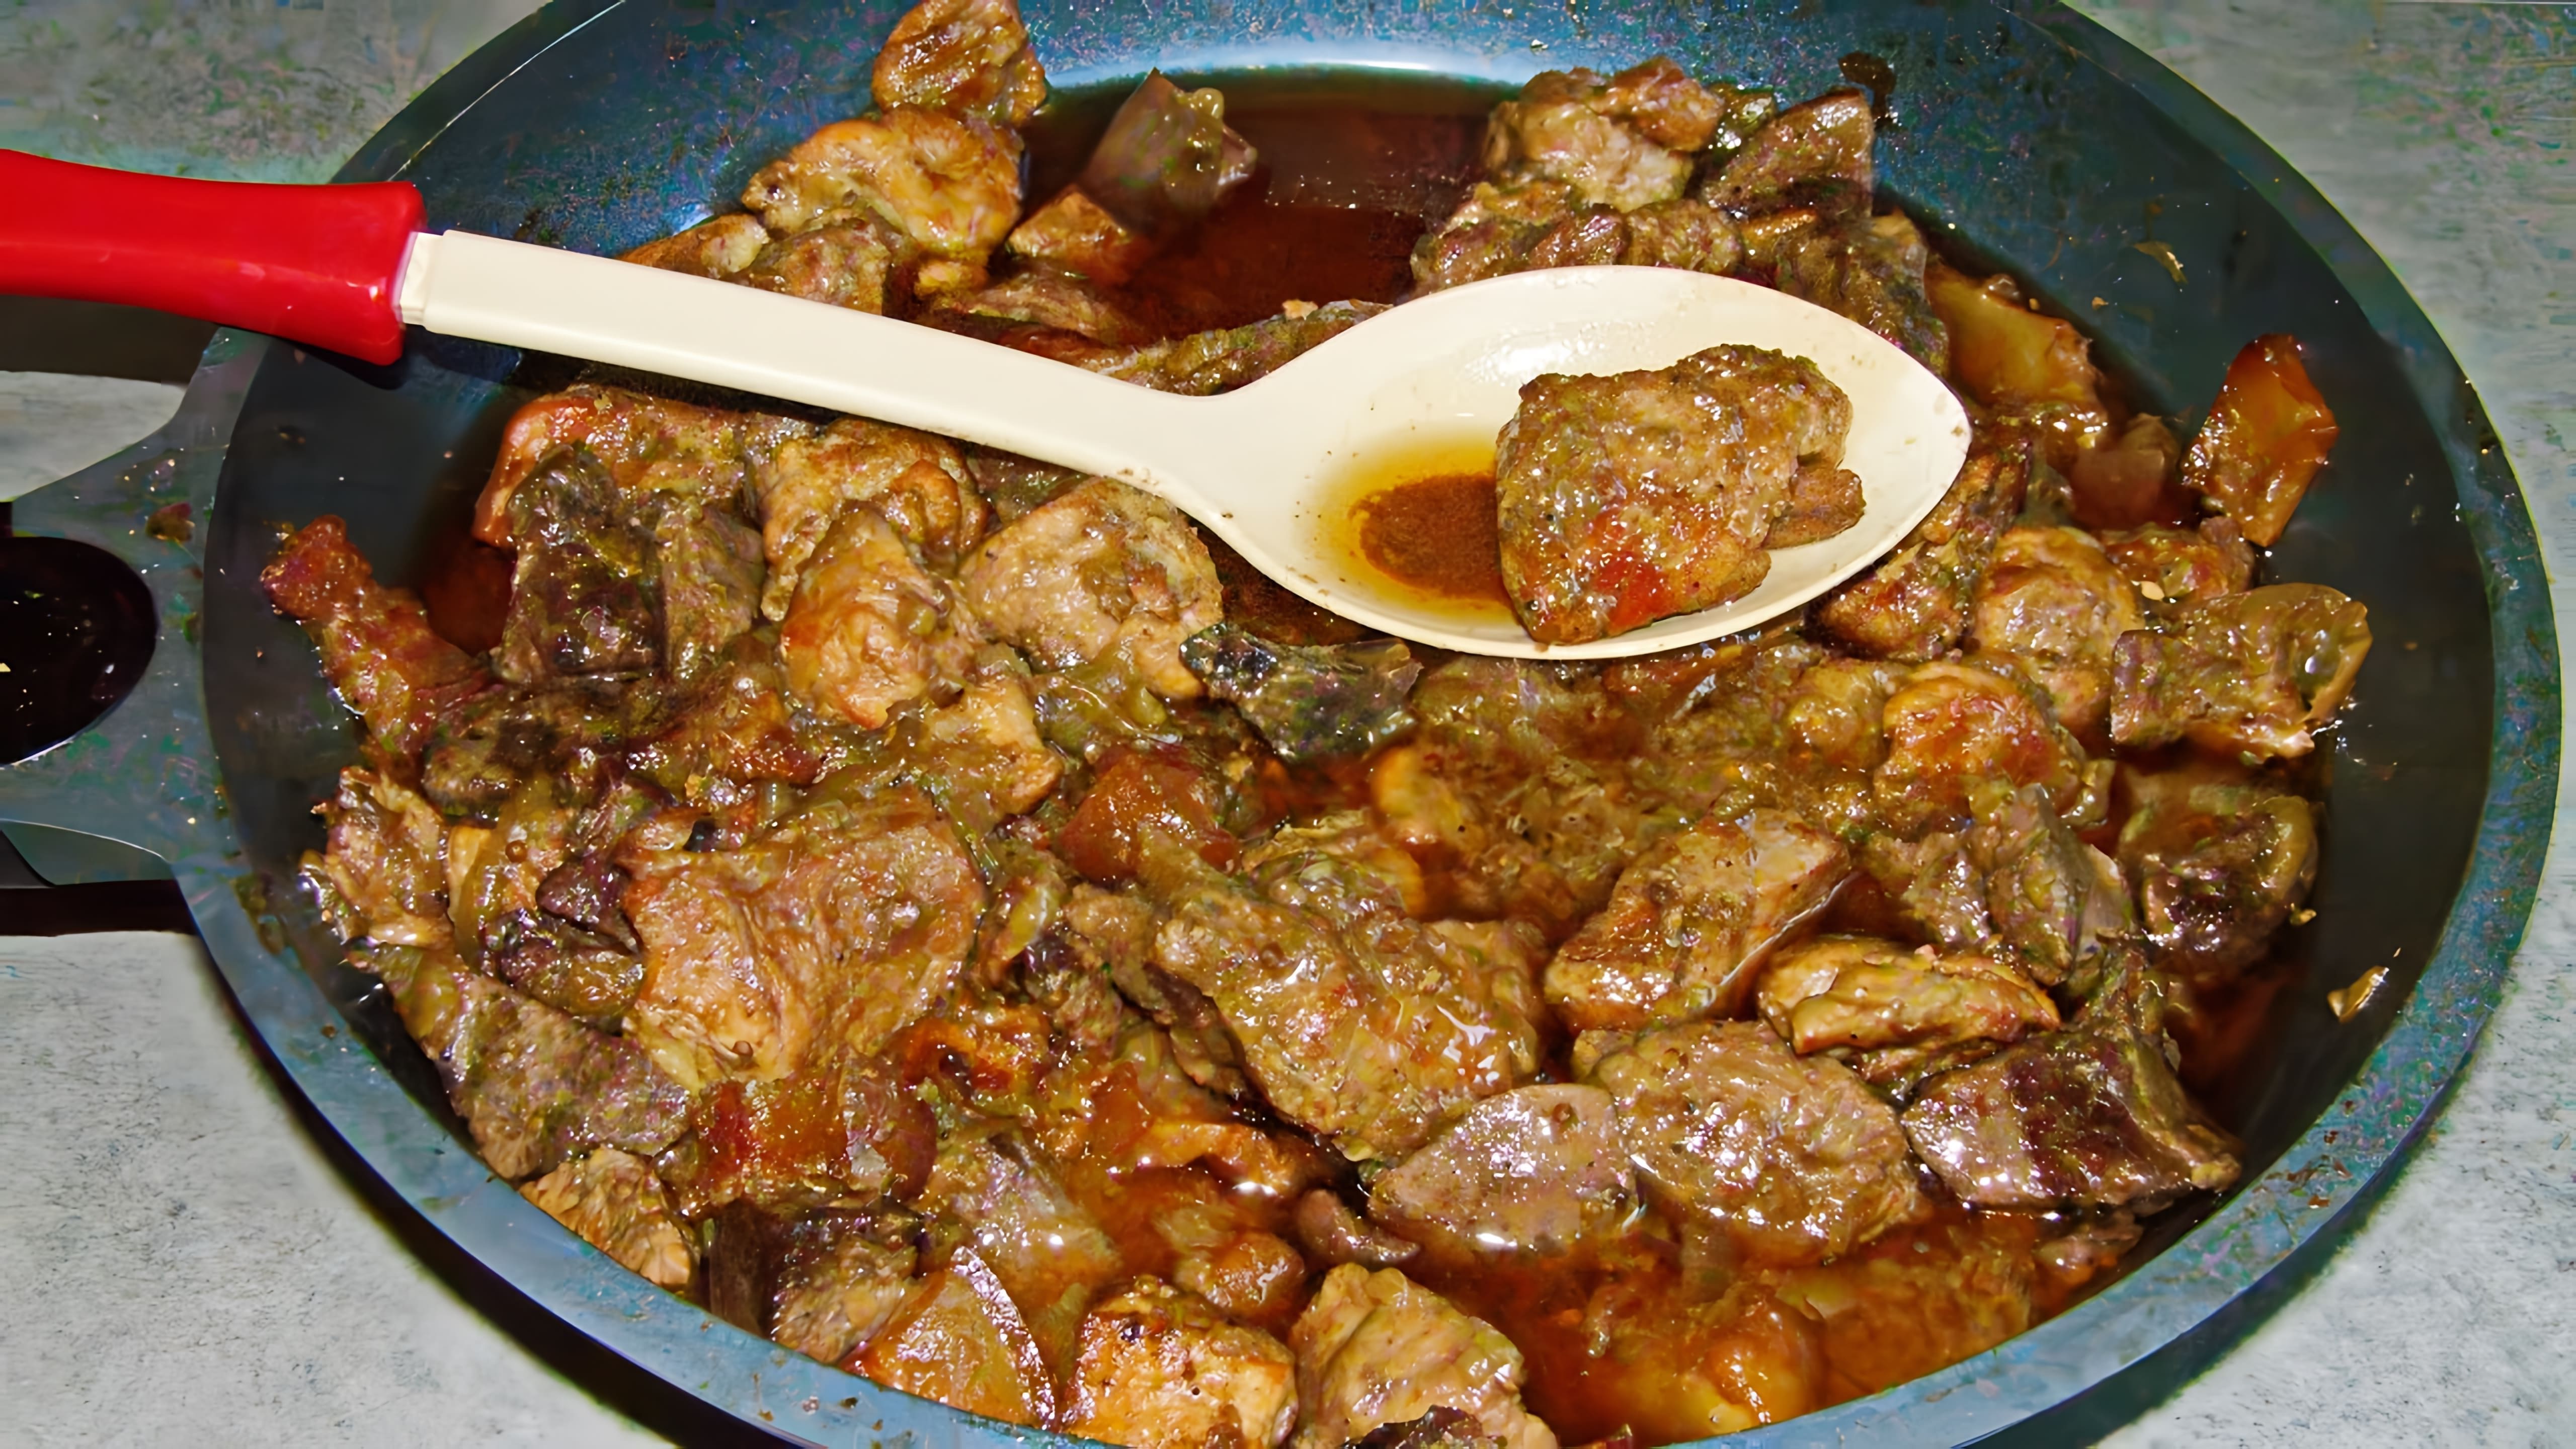 В этом видео демонстрируется рецепт приготовления жареной свинины, которая, по мнению автора, получается вкуснее шашлыка